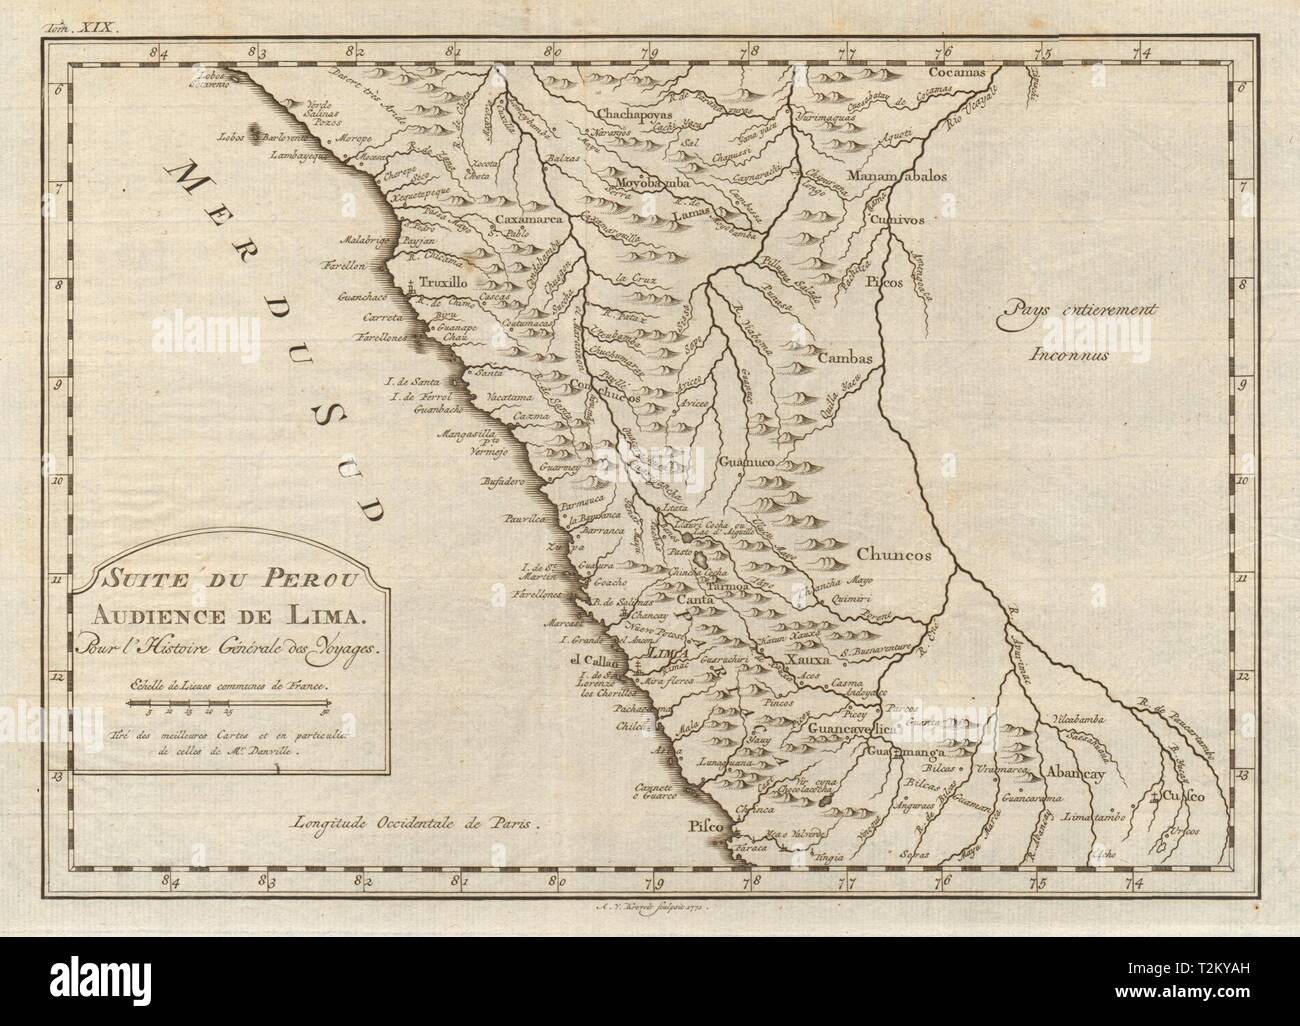 'Suite du Perou. Audience de Lima'. Peru. BELLIN/SCHLEY 1772 old antique map Stock Photo